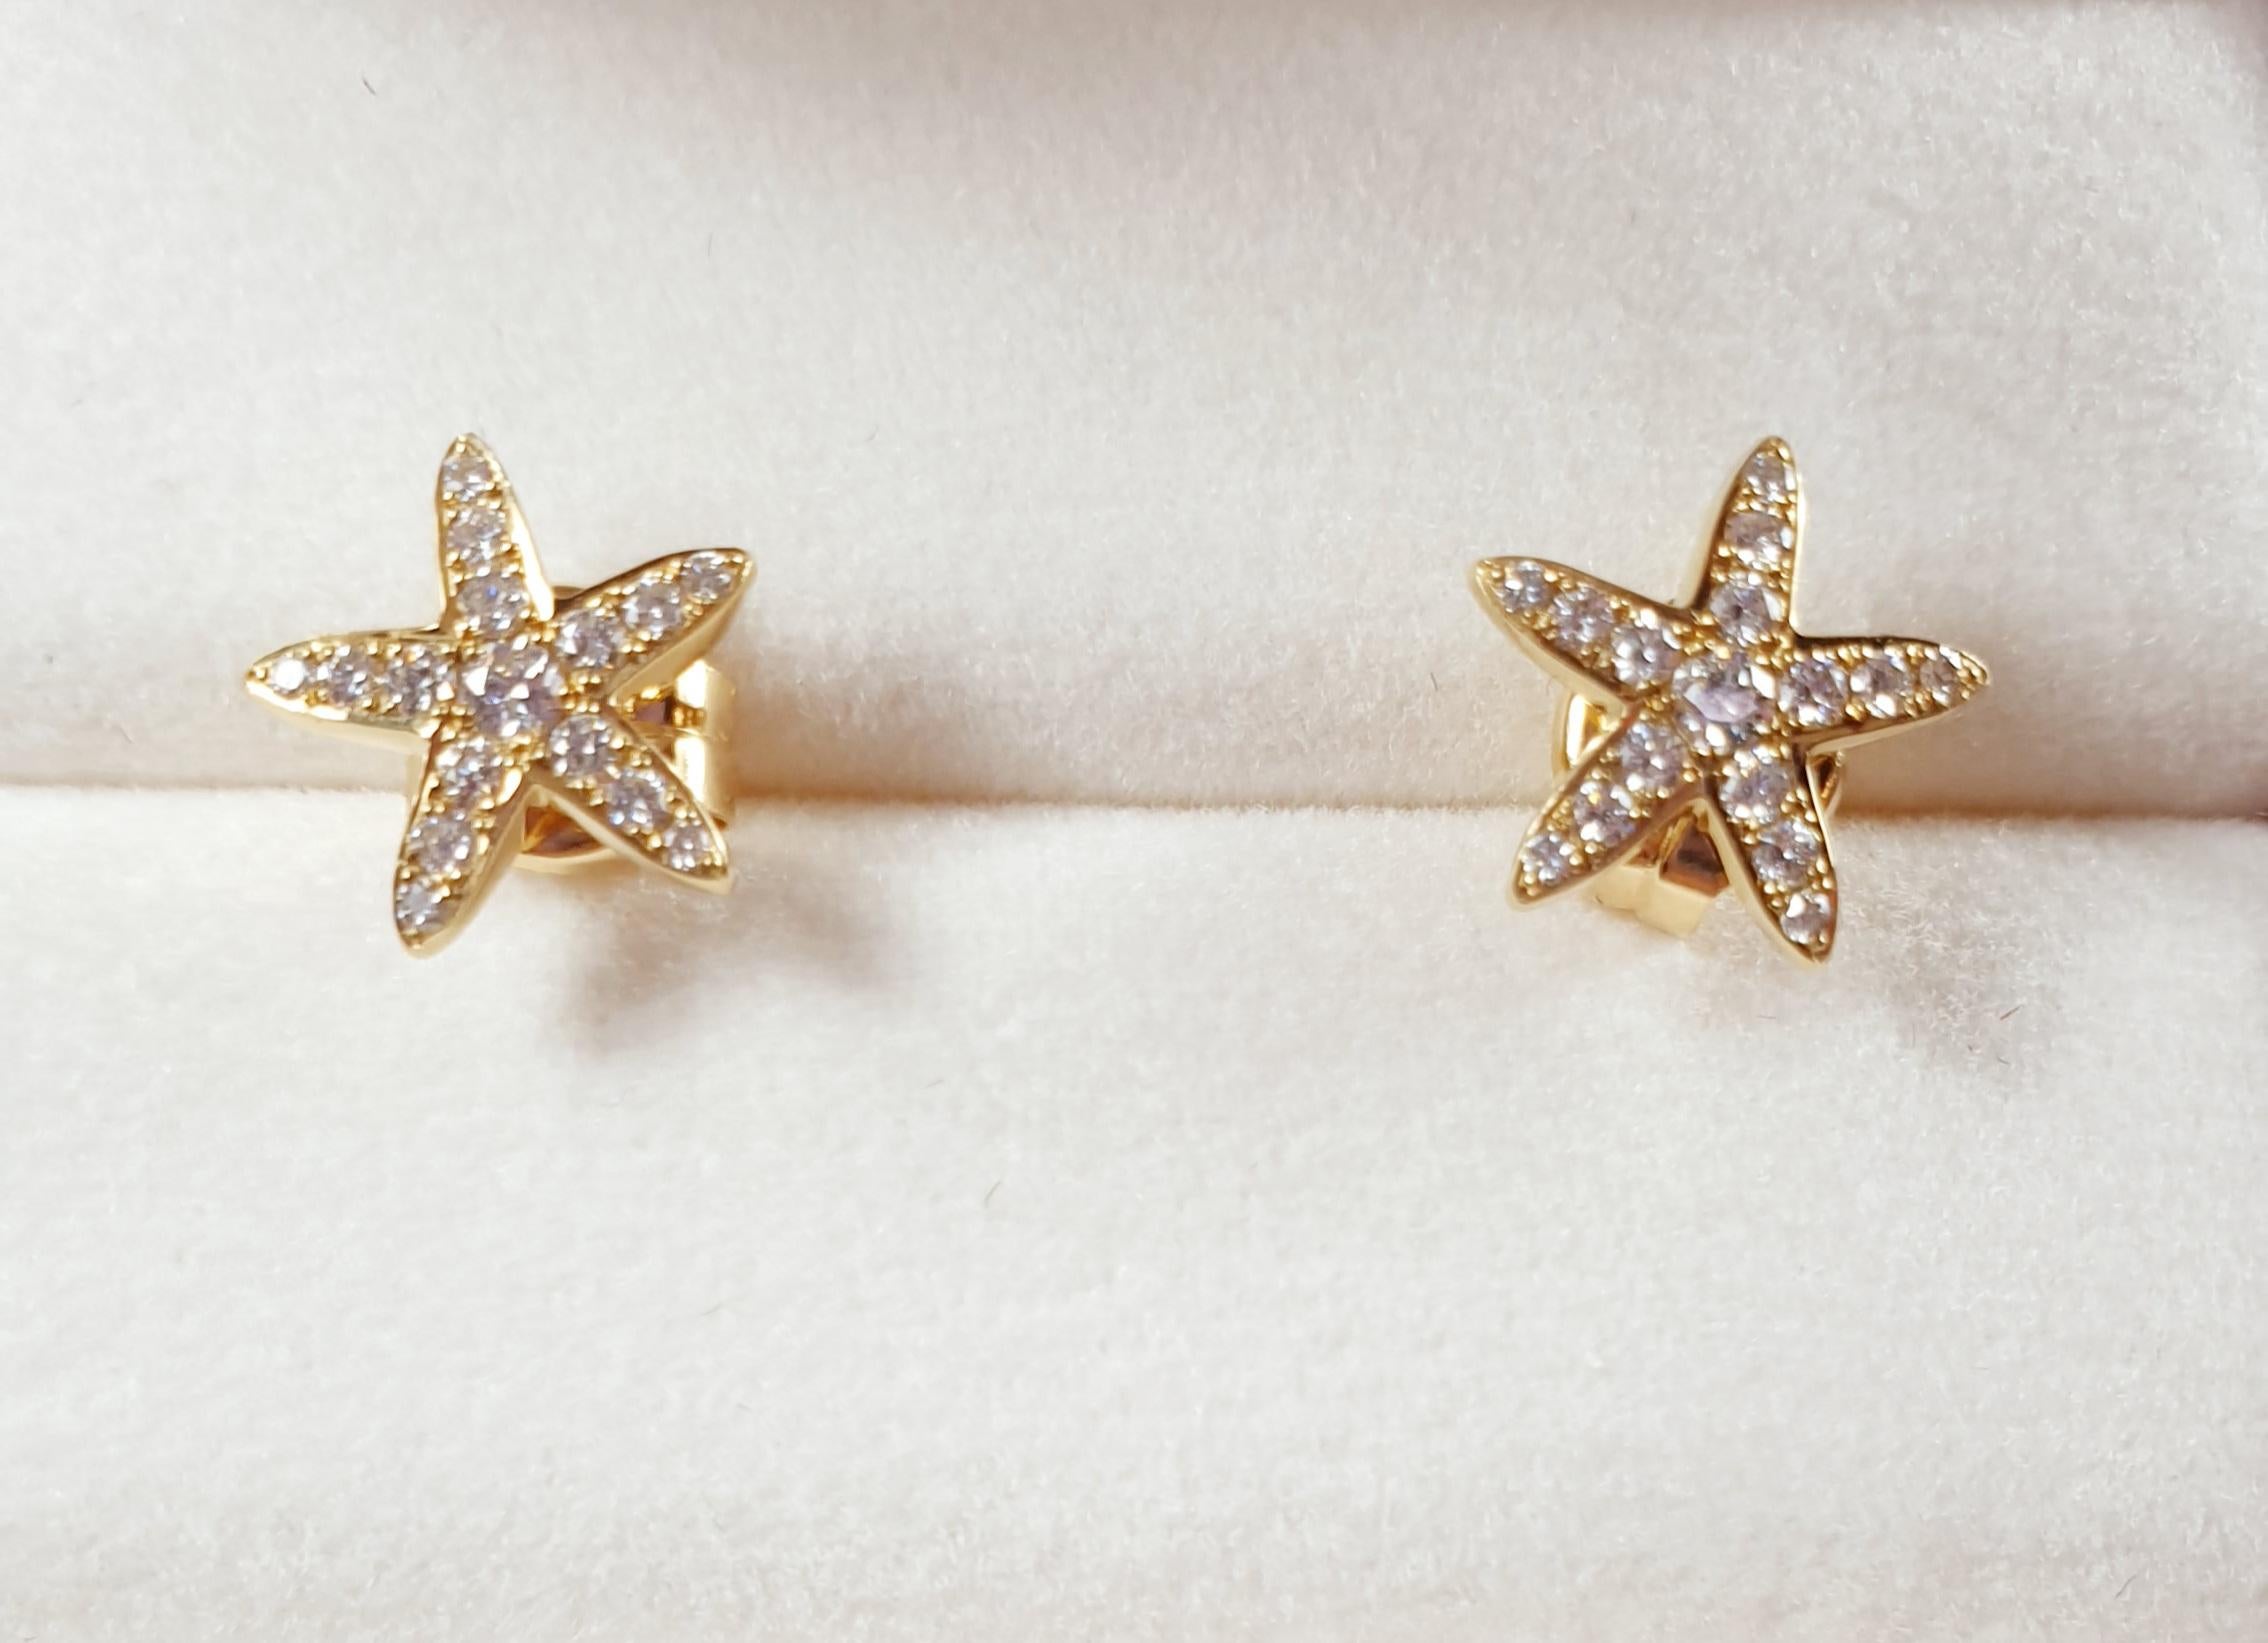 La collection Sea Star, inspirée des couleurs de la mer Méditerranée...
Options 2 couleurs or jaune et or blanc
◘ Chaque création d'Irama Pradera Jewels est faite à la main
◘ 15 -0.01ct et 1 -0.025ct total 0.175ct diamants blancs (VS, G-H)
◘